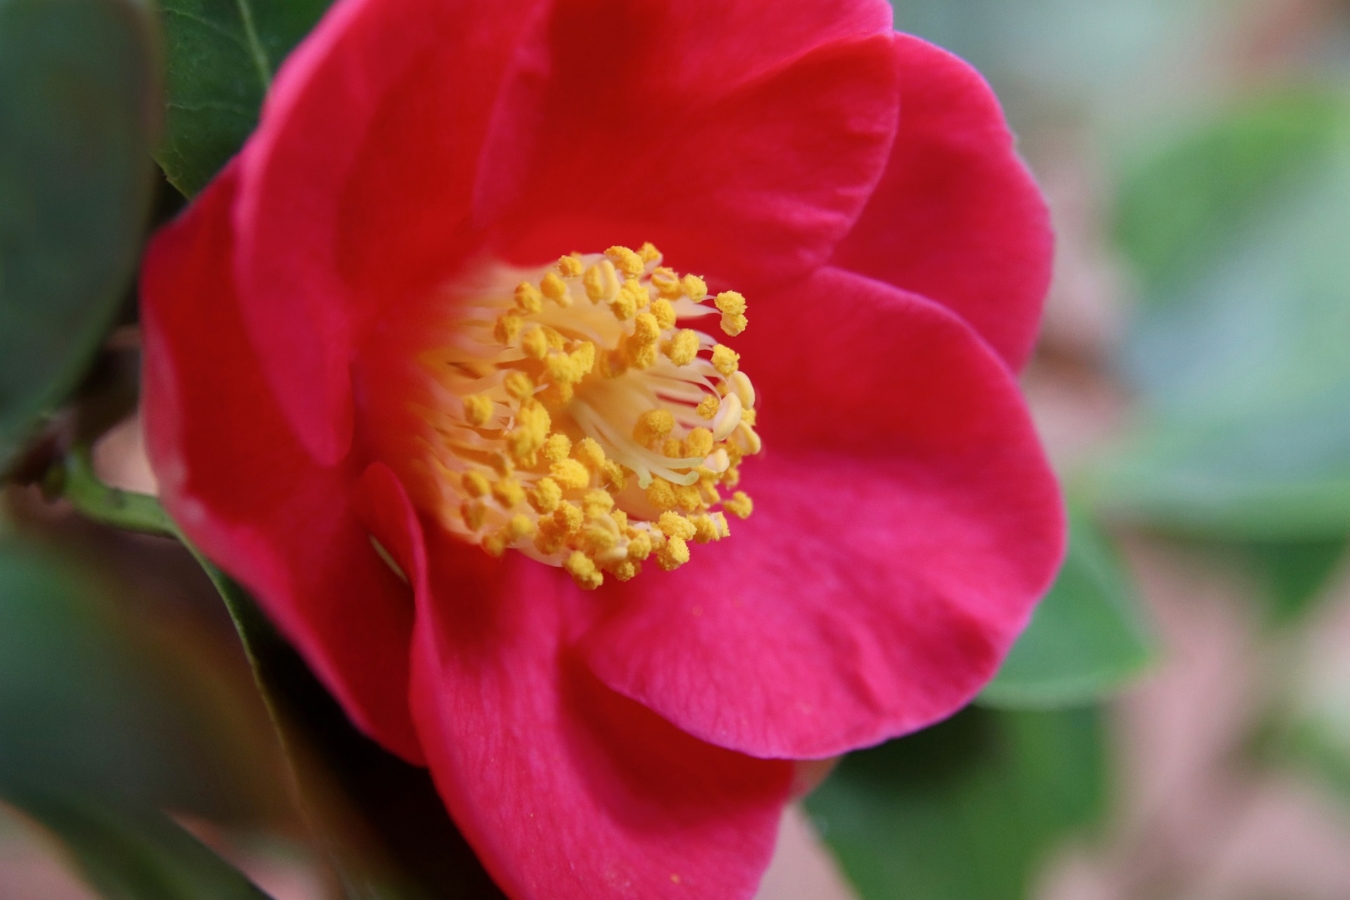 椿 ツバキ の花言葉と由来 色 品種別 英語の花言葉 怖い意味は Hanasaku